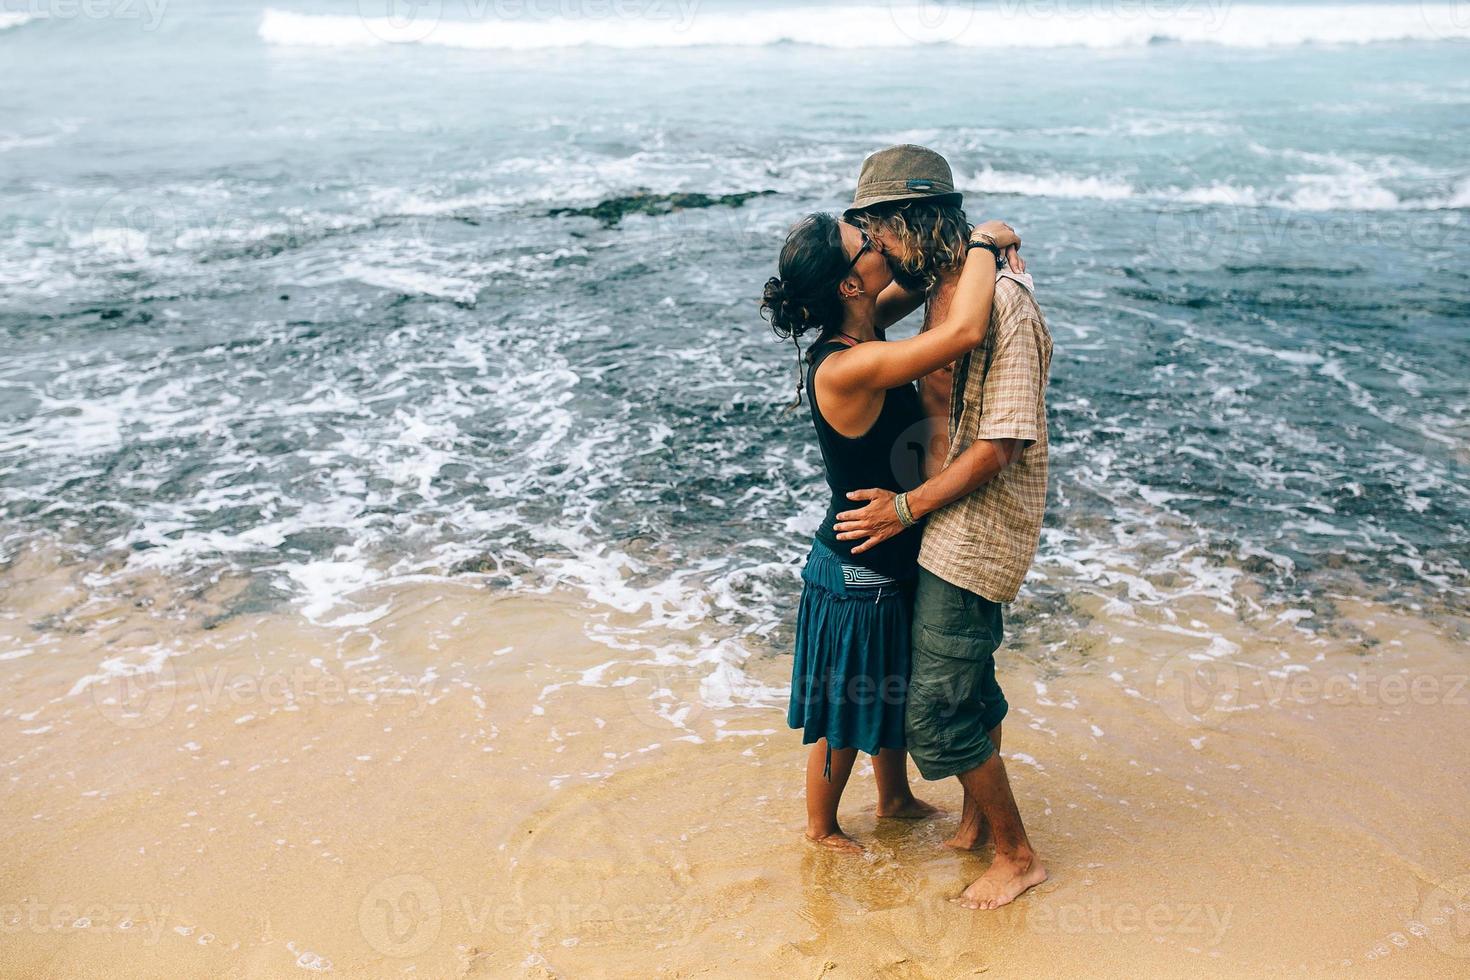 couple on a tropical beach photo